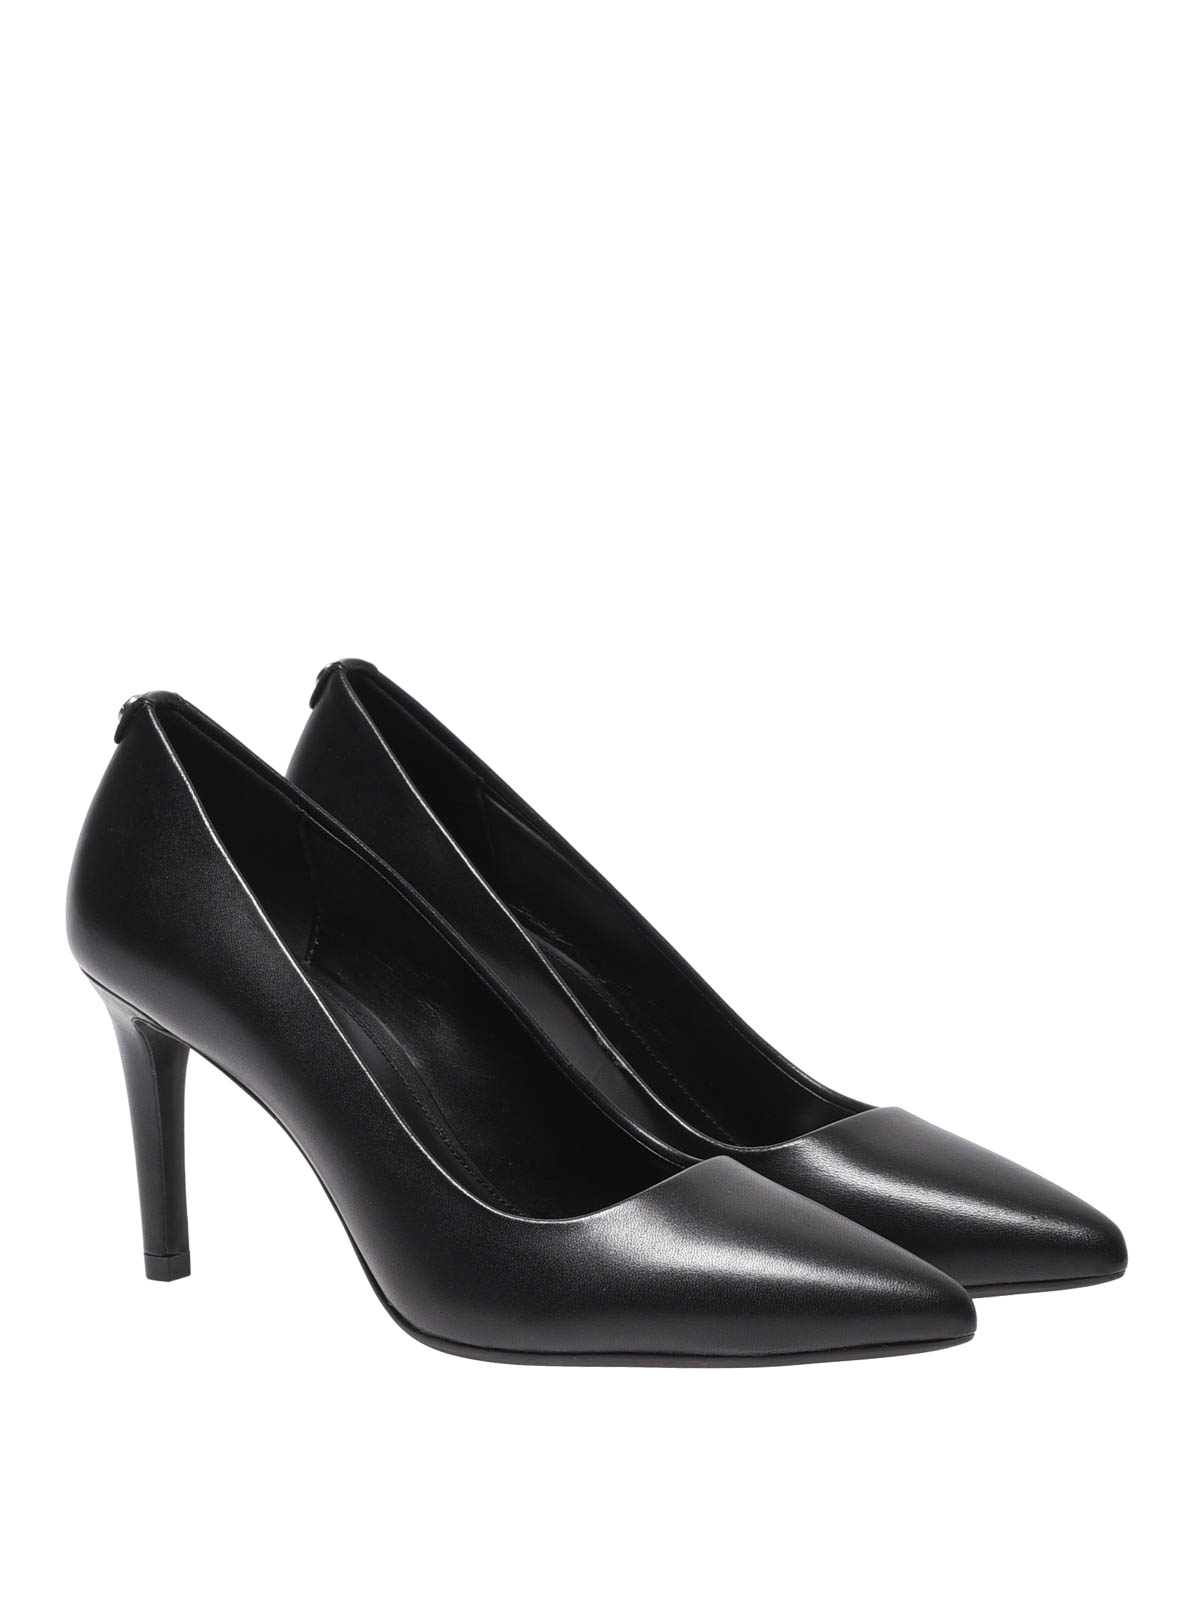 Court shoes Michael Kors - Dorothy Flex leather pumps - 40F6DOMP1L001